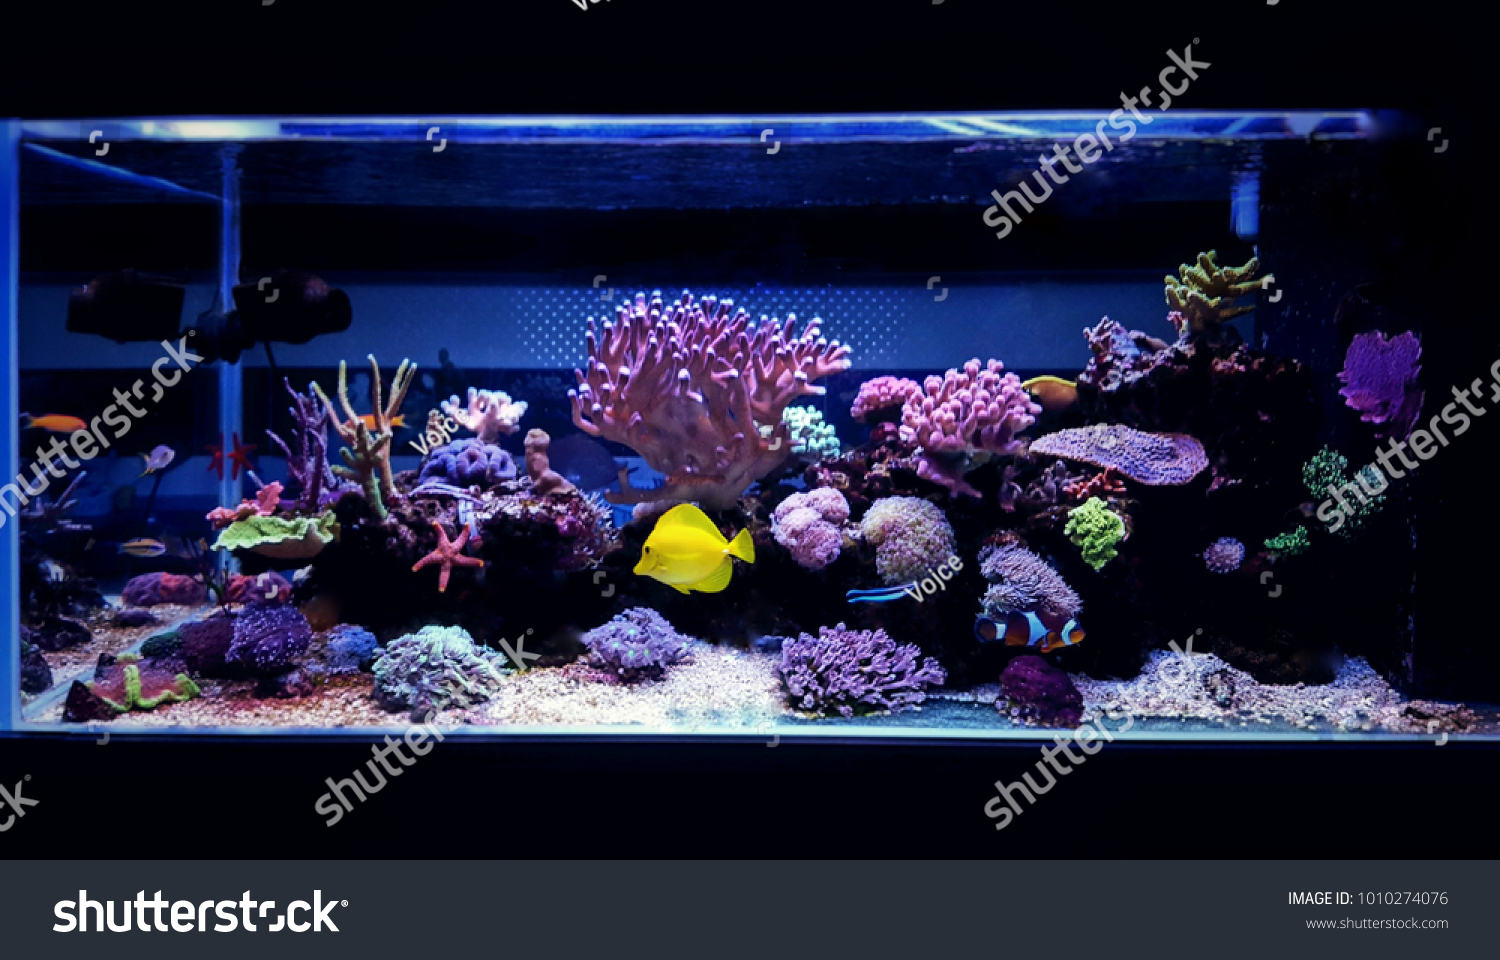 Coral reef aquarium tank scene #1010274076